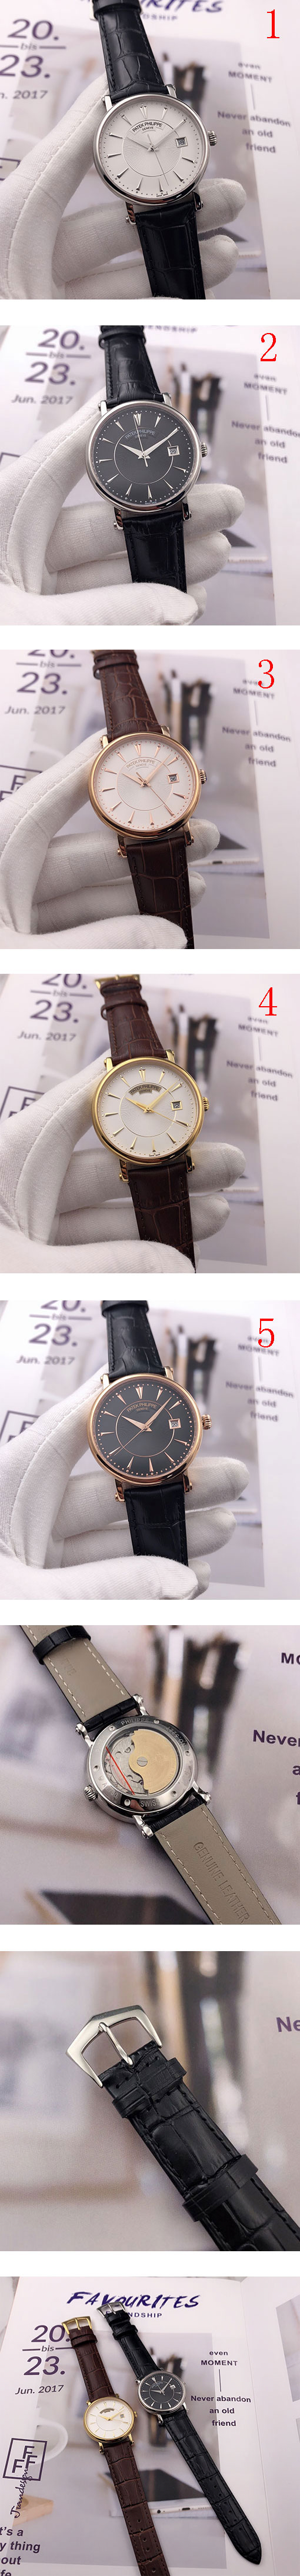 パテック フィリップ カラトラバ5153G シリーズスーパーコピー時計のおすすめ